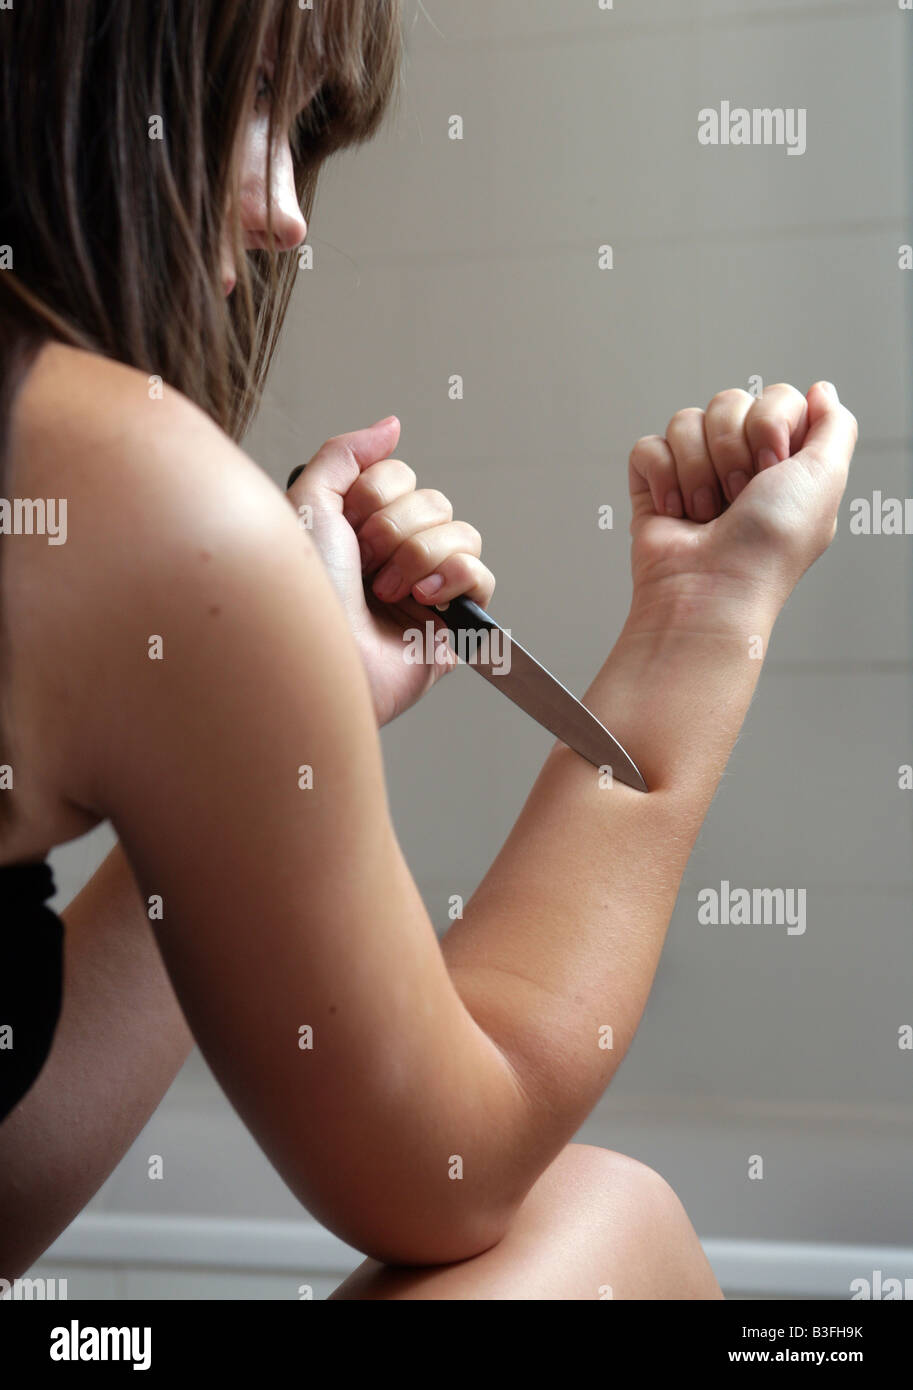 junge Frau verletzt sich selbst mit einem Messer Stockfoto